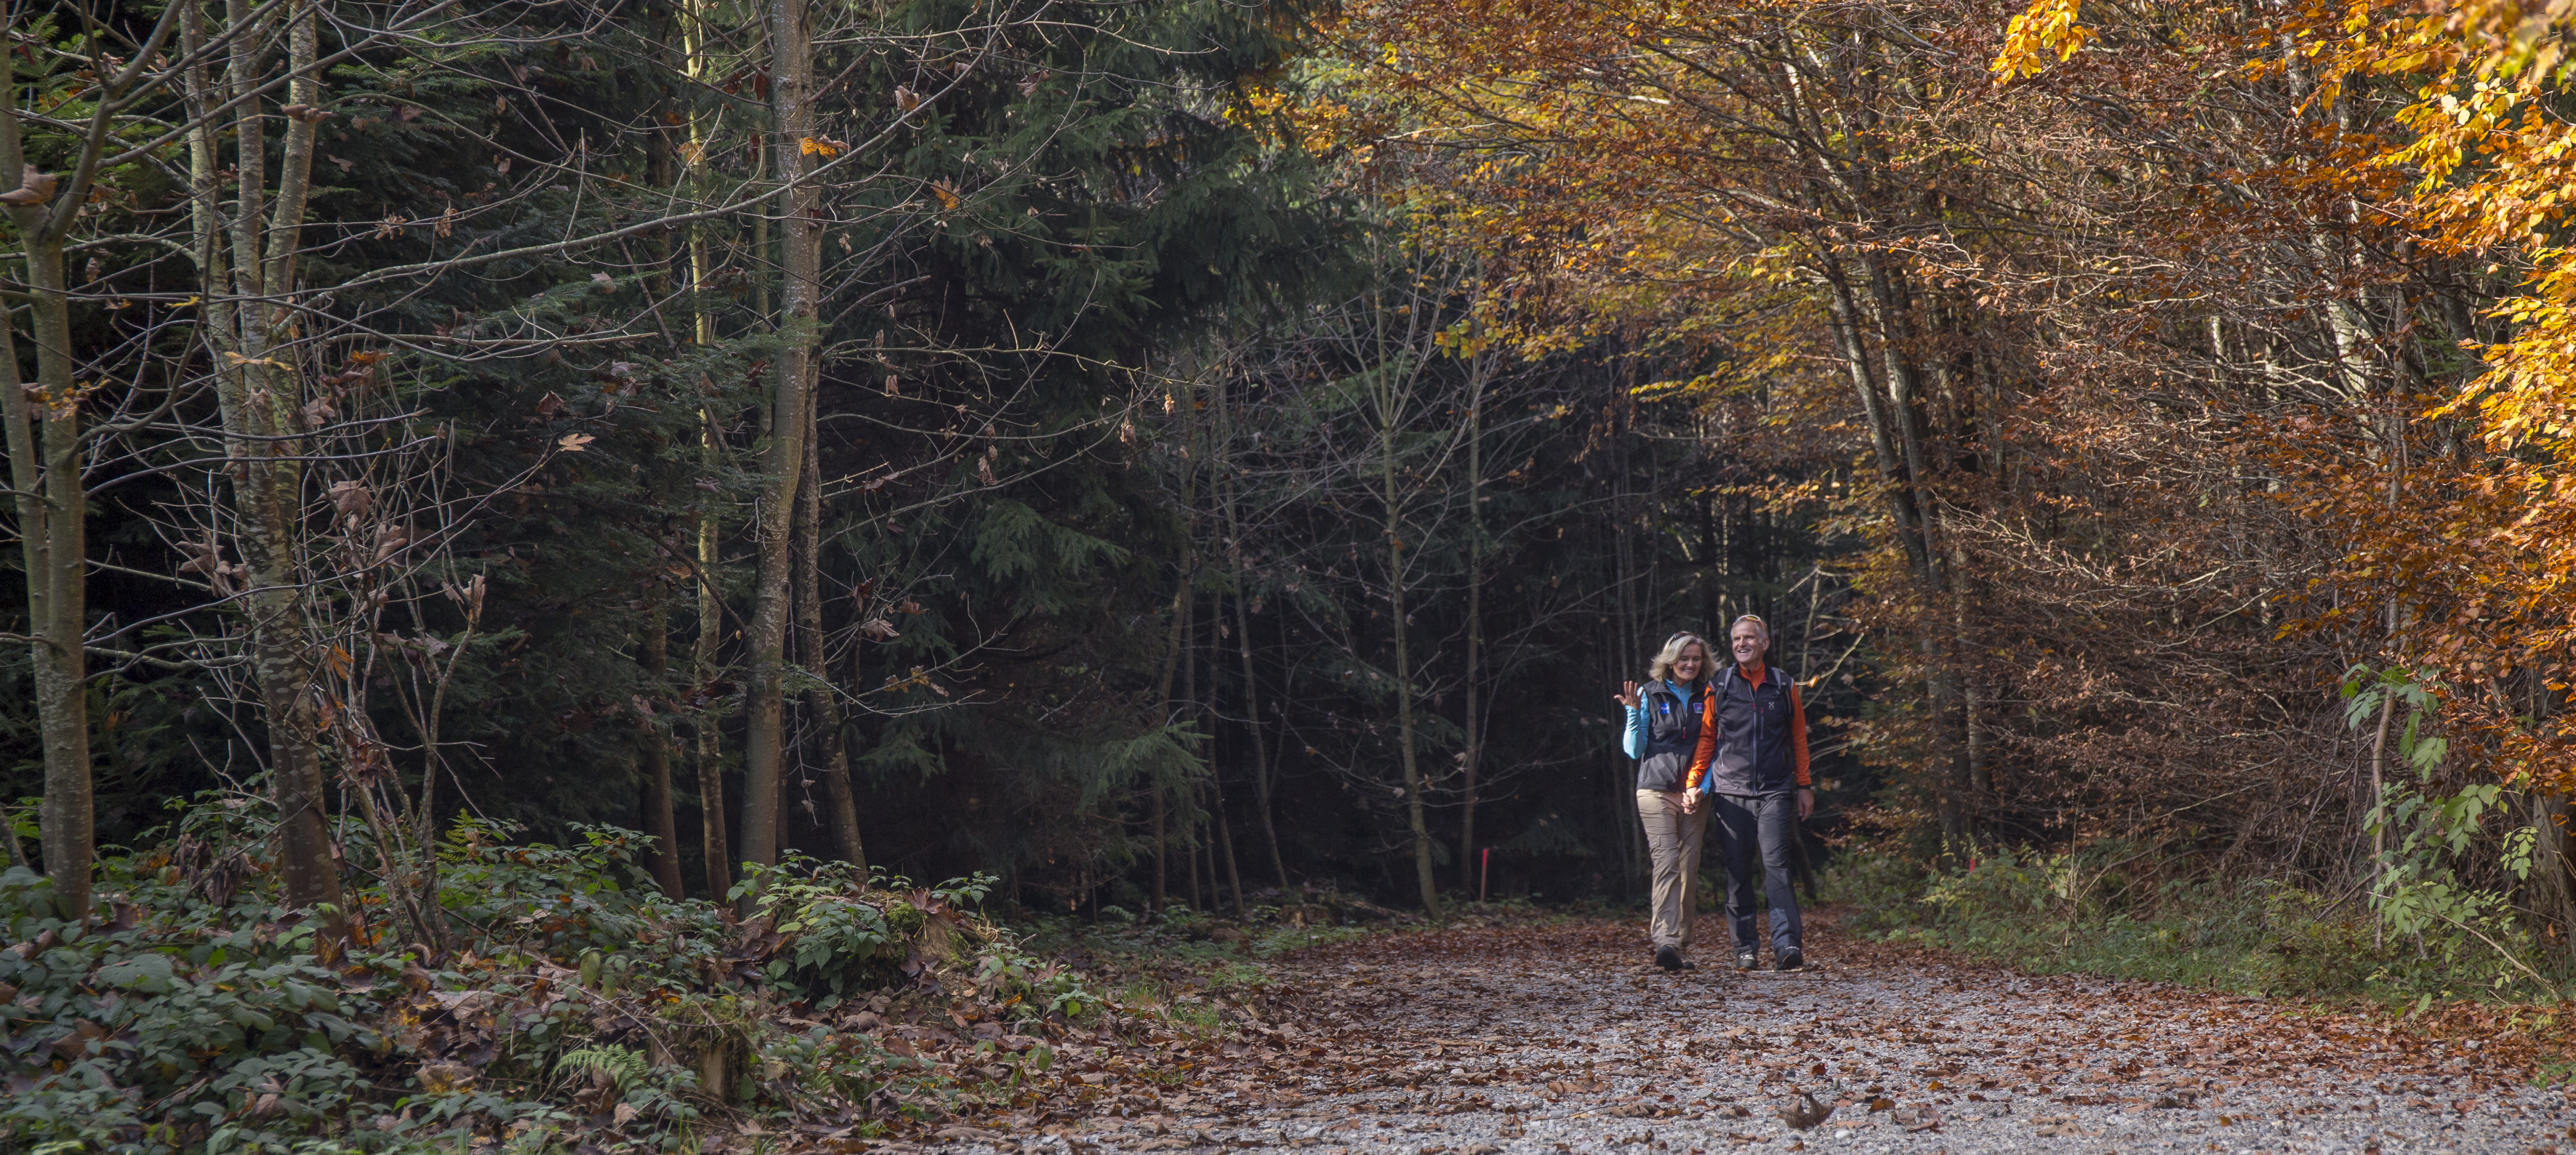 Die Farbenpracht im Herbst genießen kann man bei geführten Wanderungen beim Unterallgäuer Wanderherbst. Foto: Myriam Schell, Bad Grönenbach